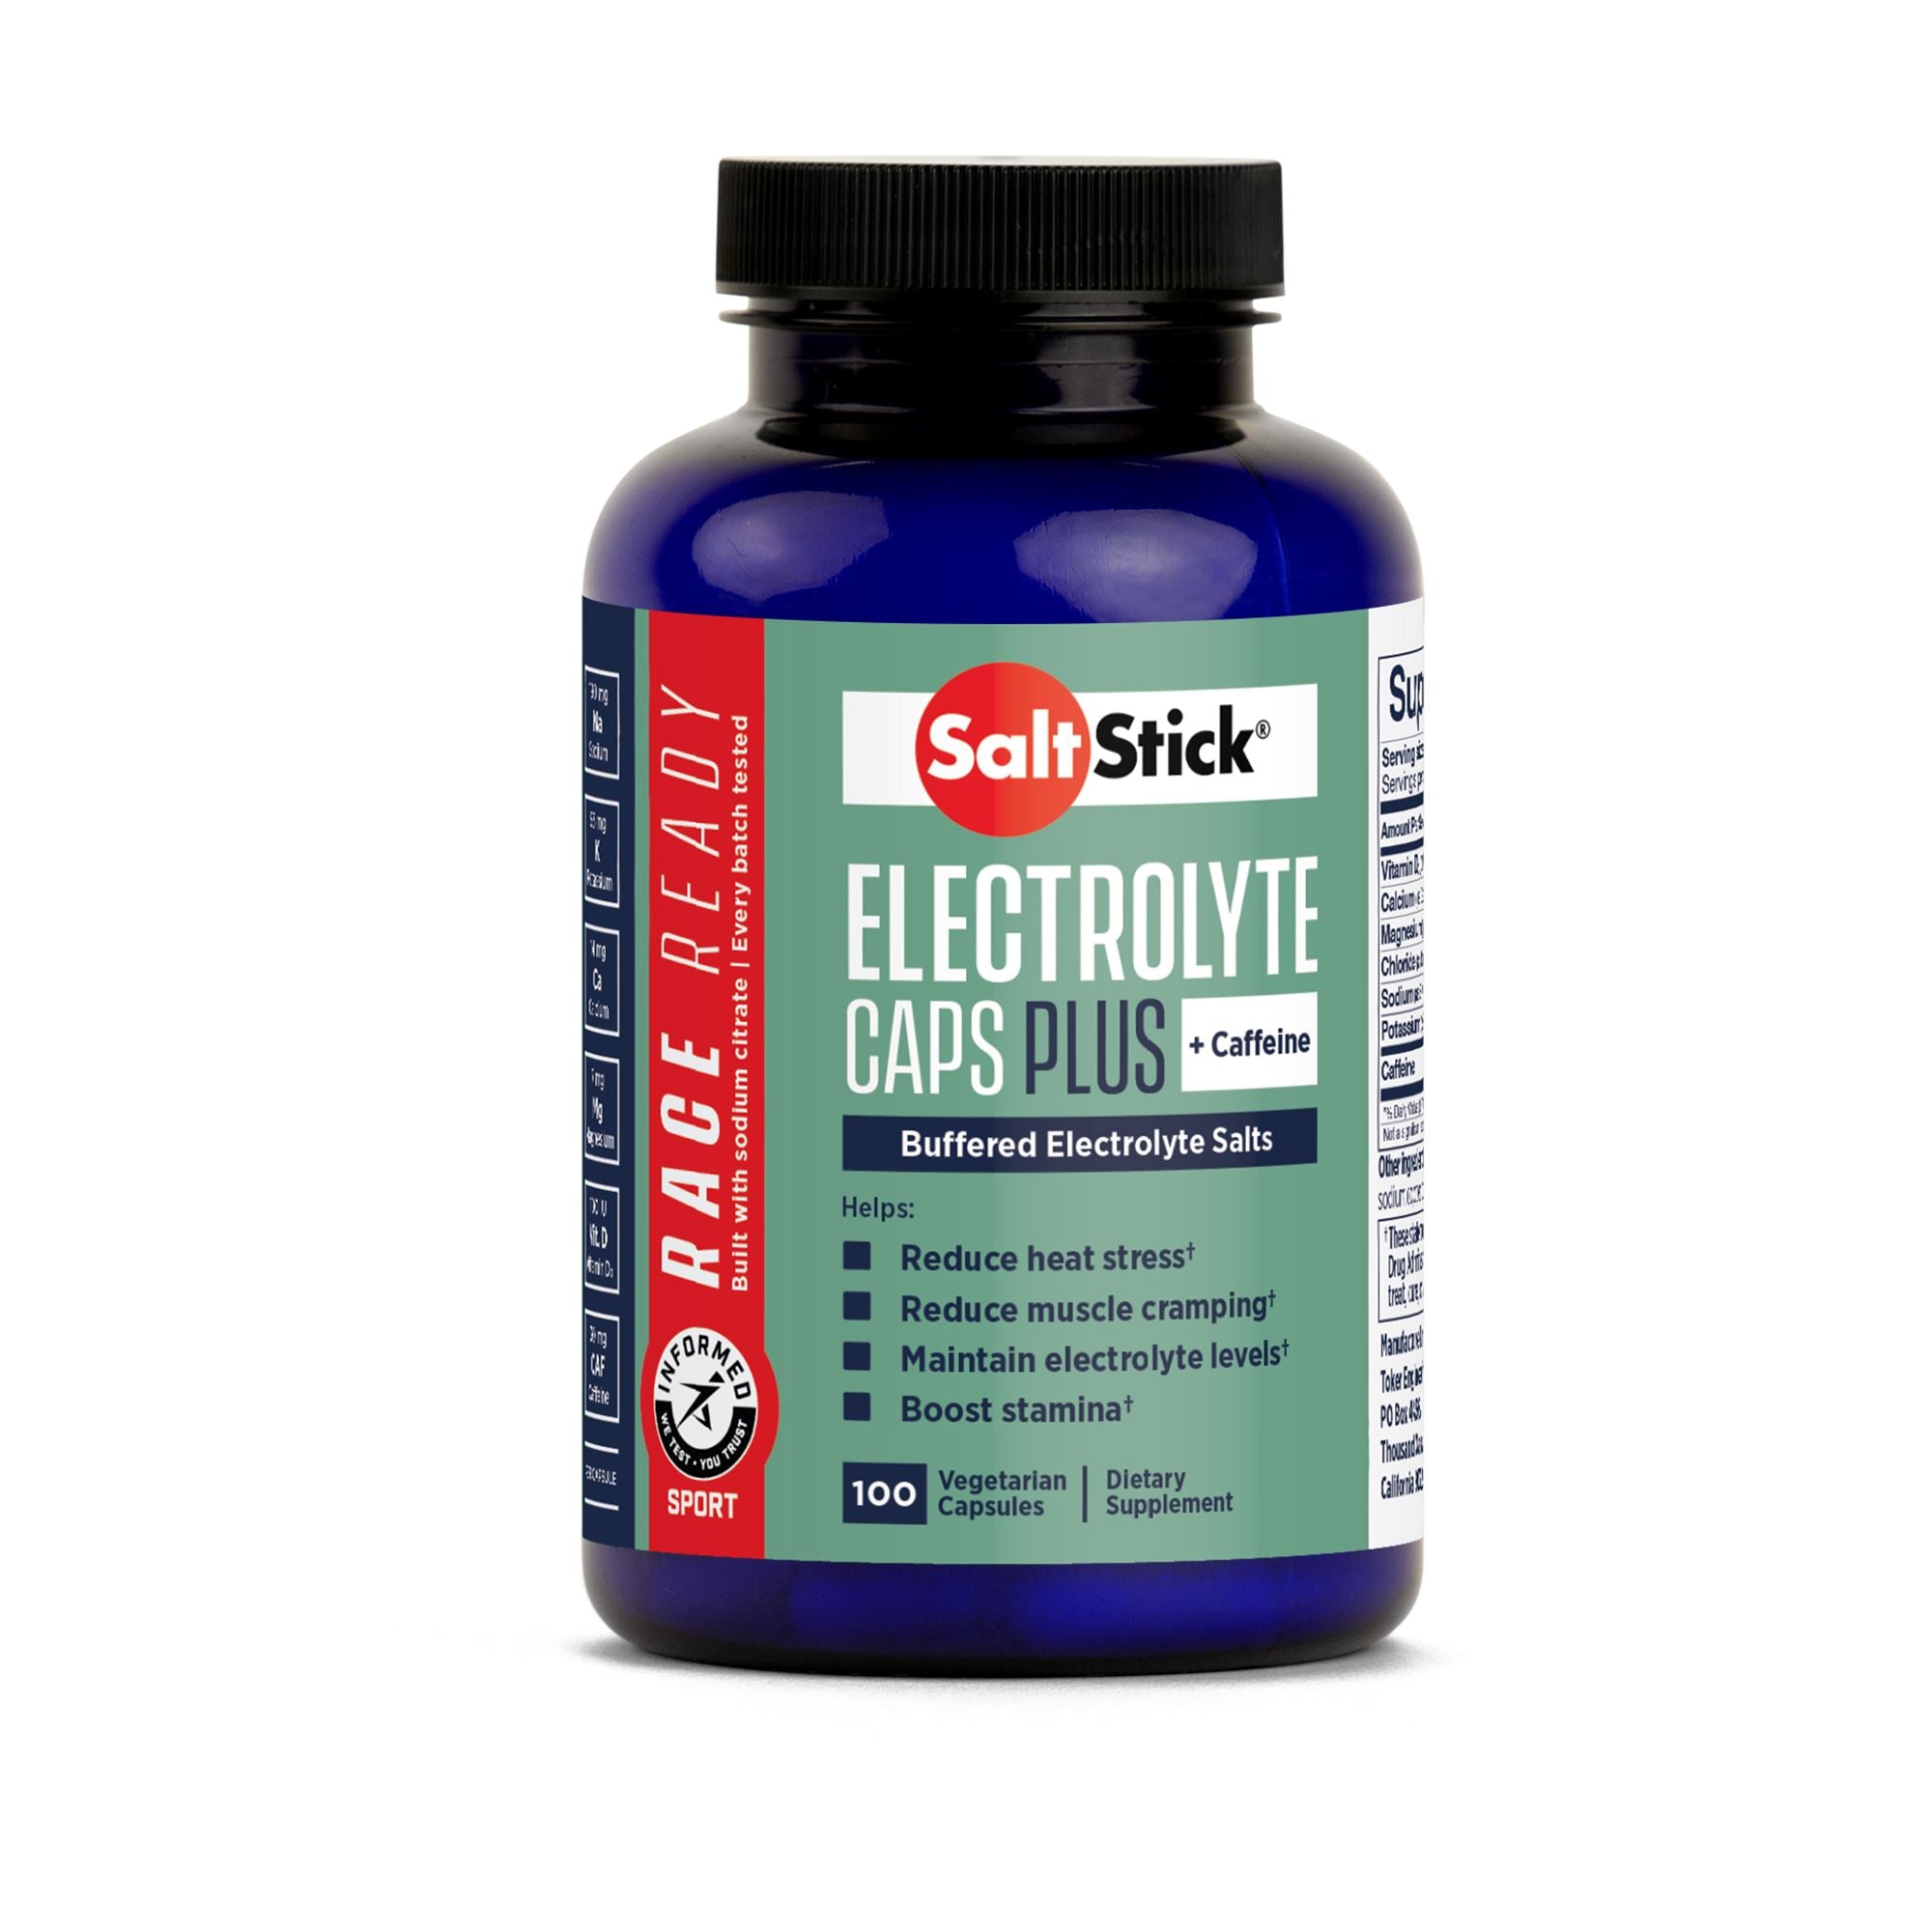 SaltStick Race Ready Electrolyte Caps Plus 100ct Bottle 